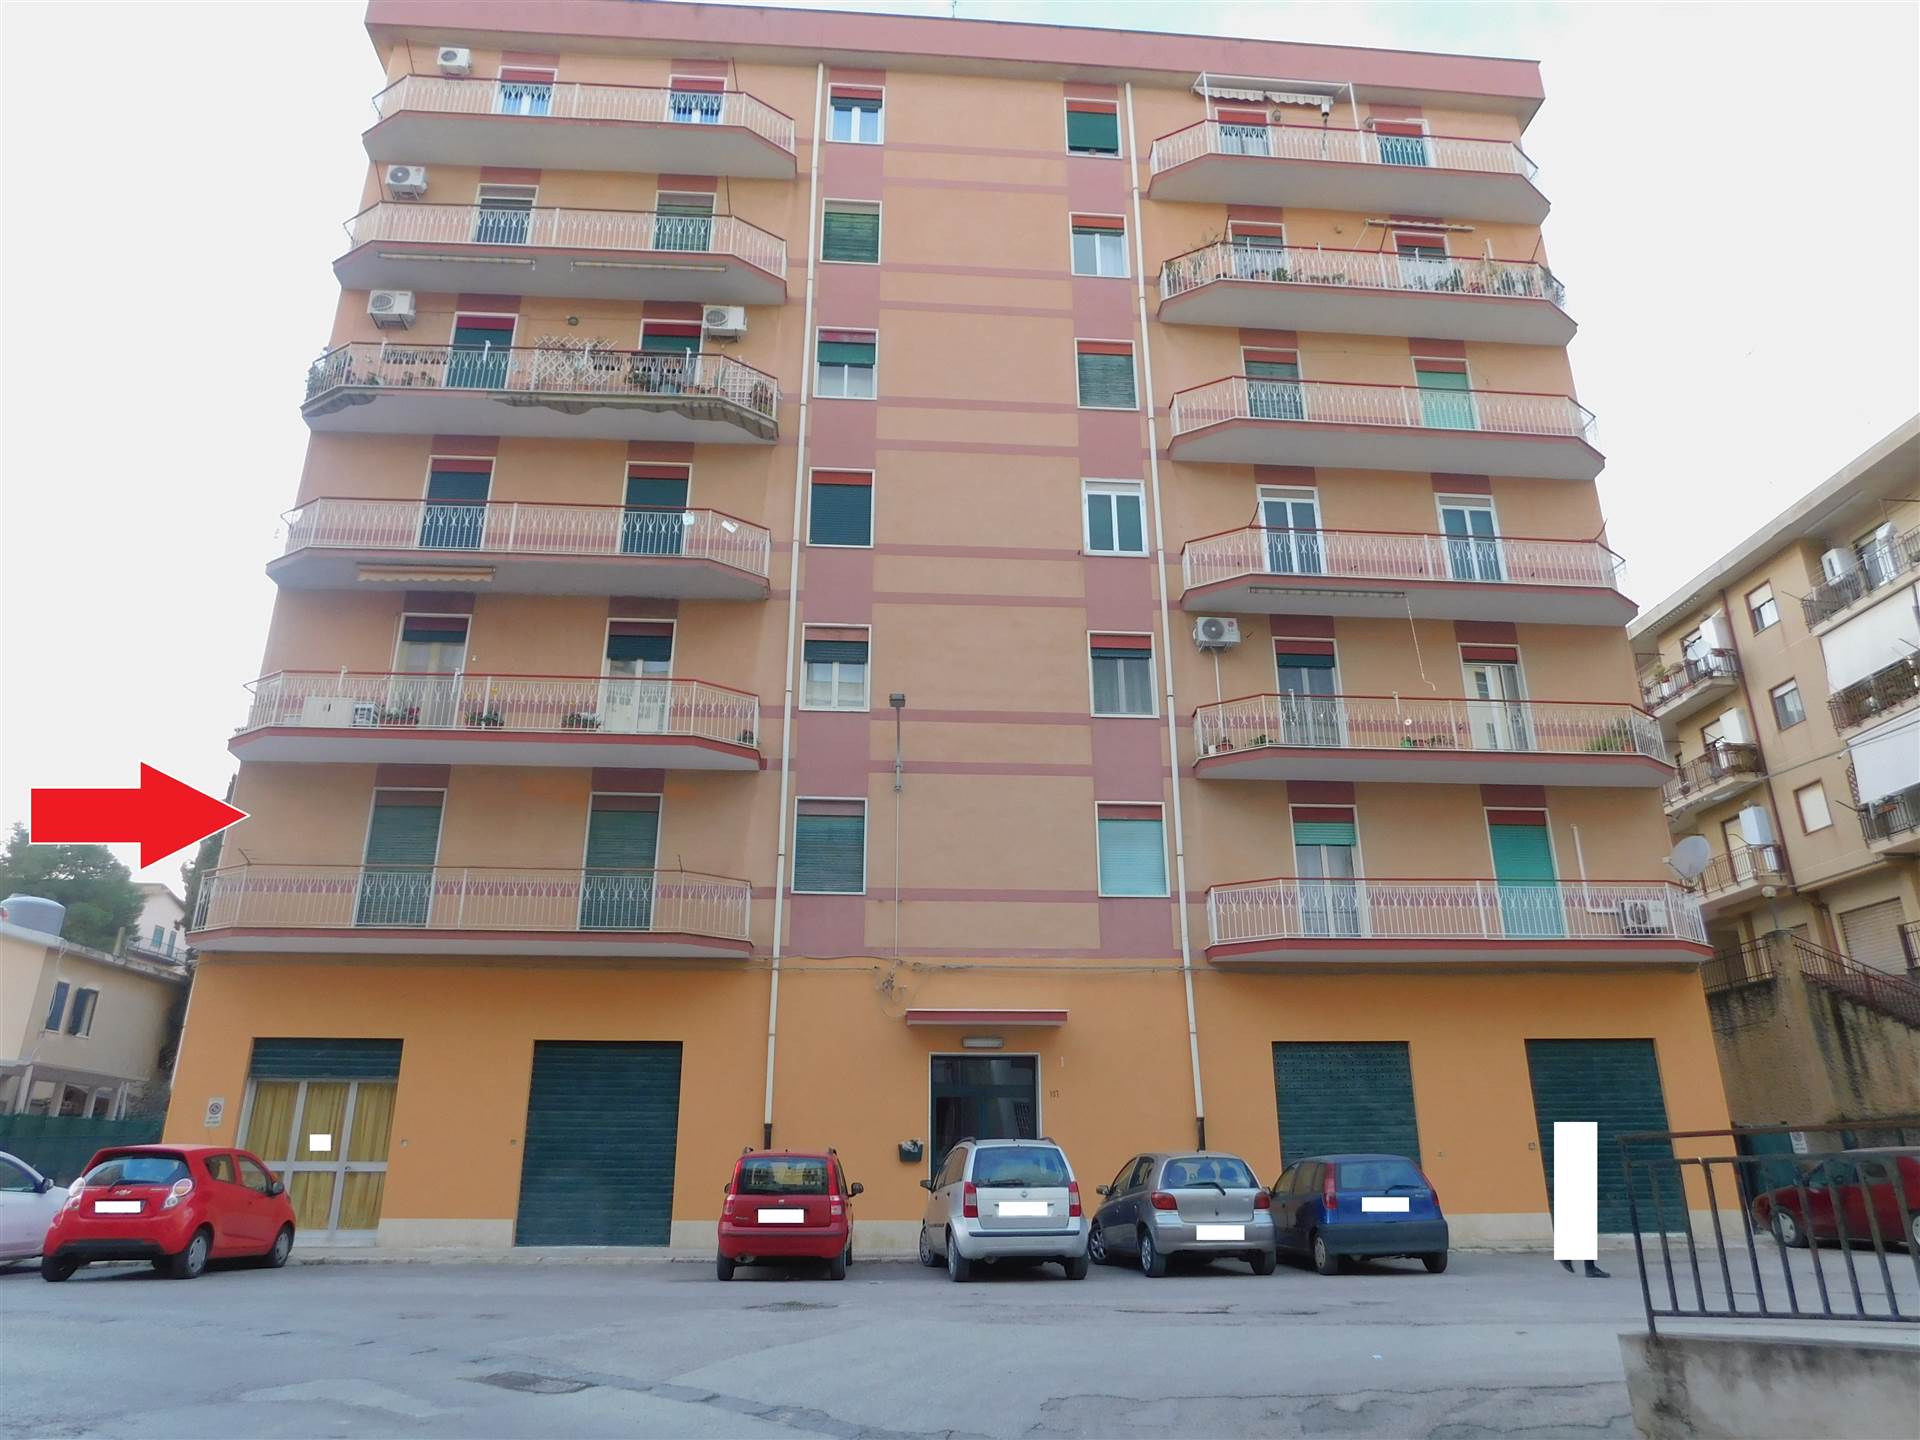 Appartamento in Viale Italia 107 in zona Piazza Degli Eroi, Viale della Rinascita, Via Babaurra a San Cataldo